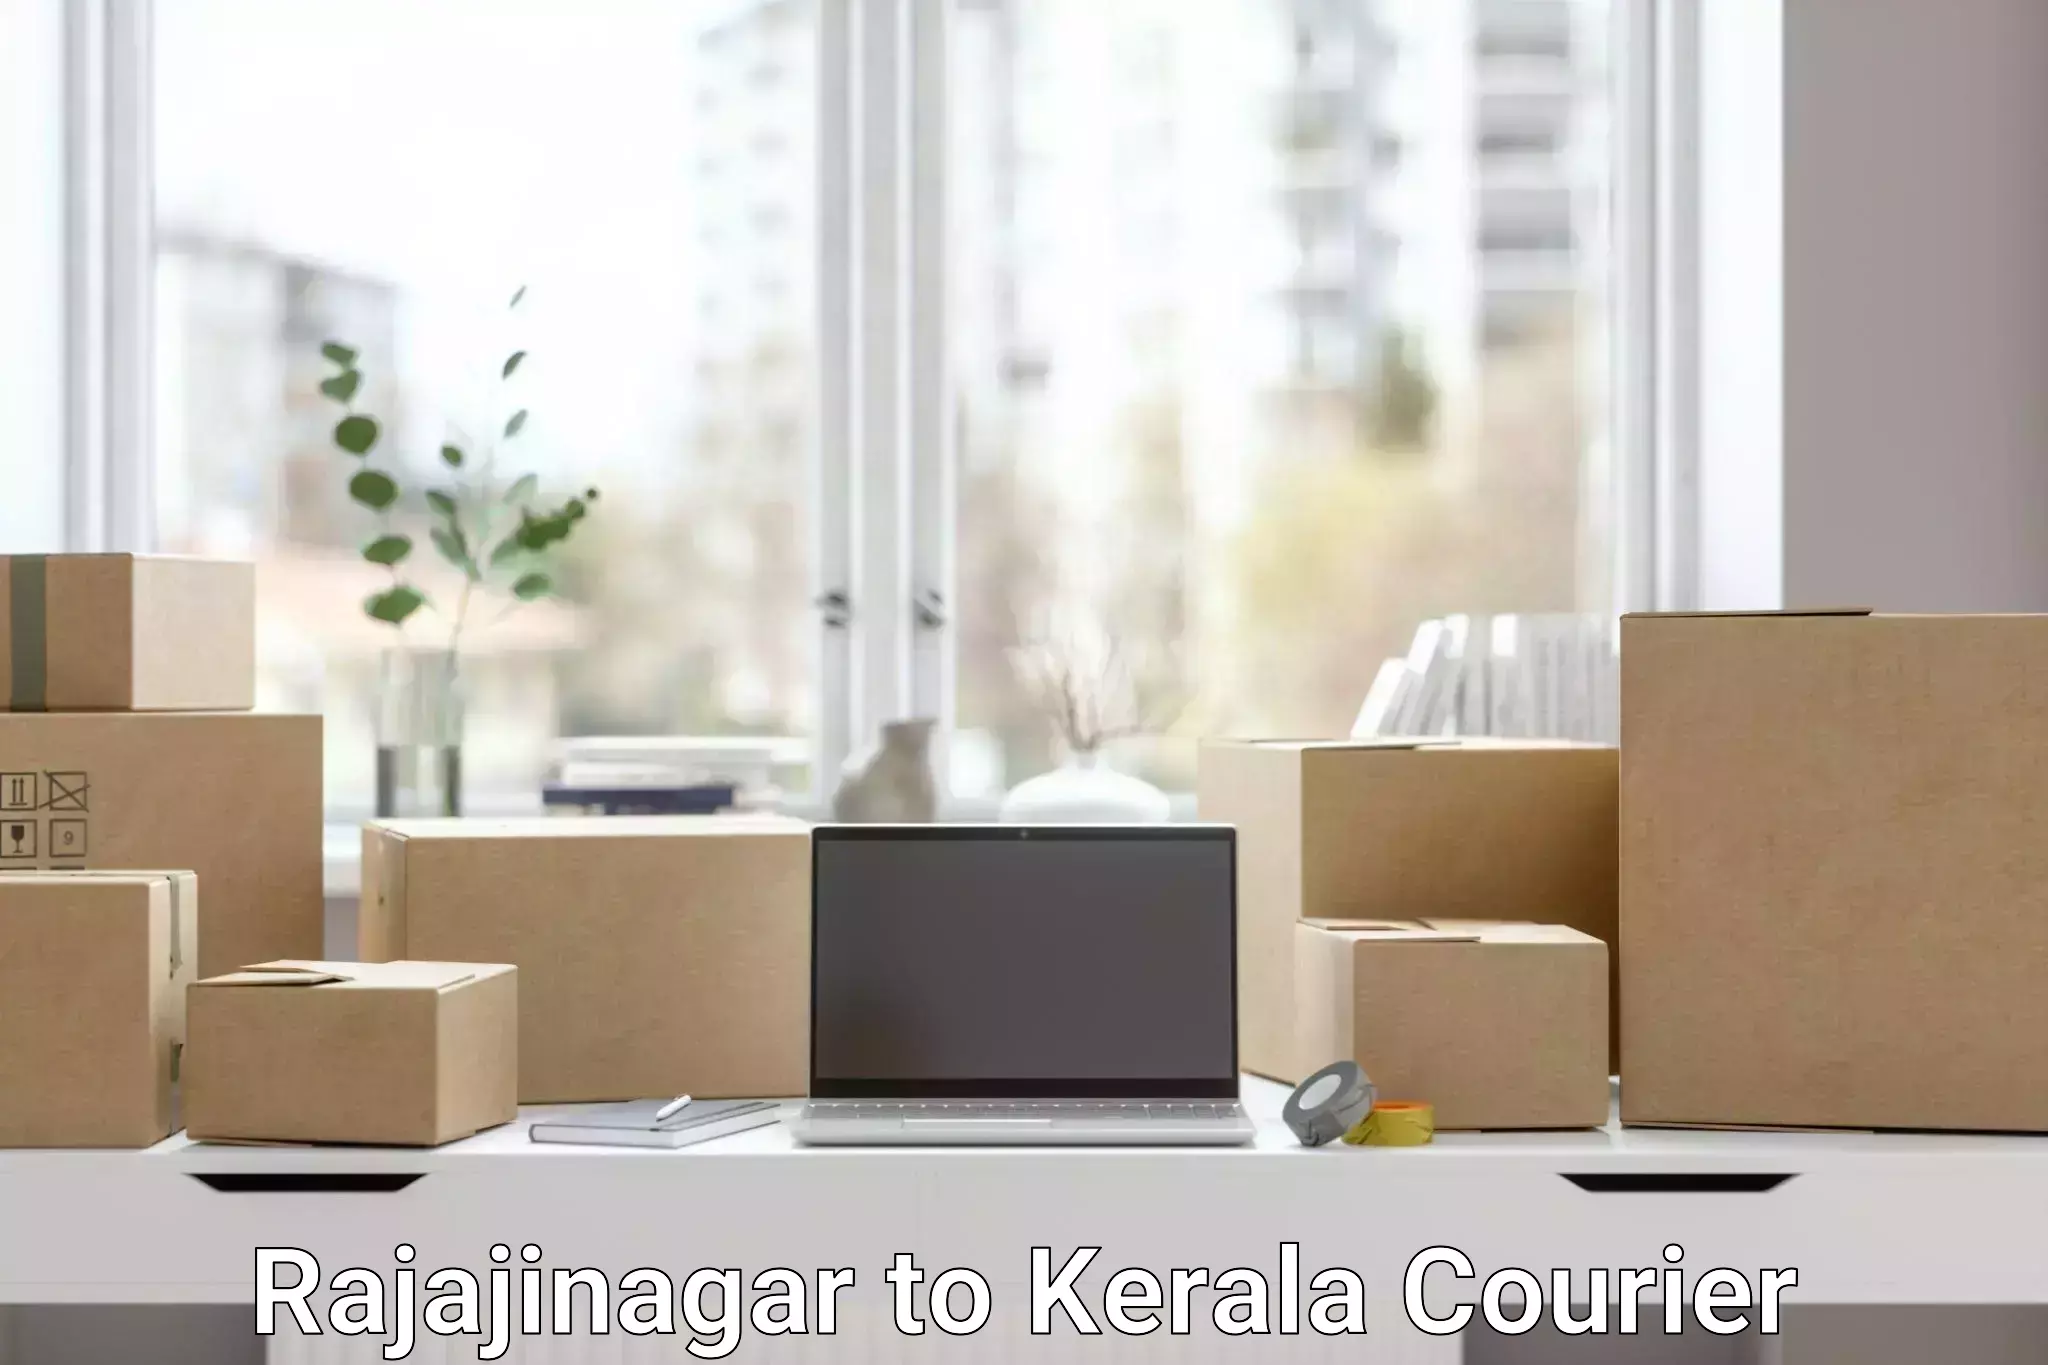 Local courier options Rajajinagar to Kerala